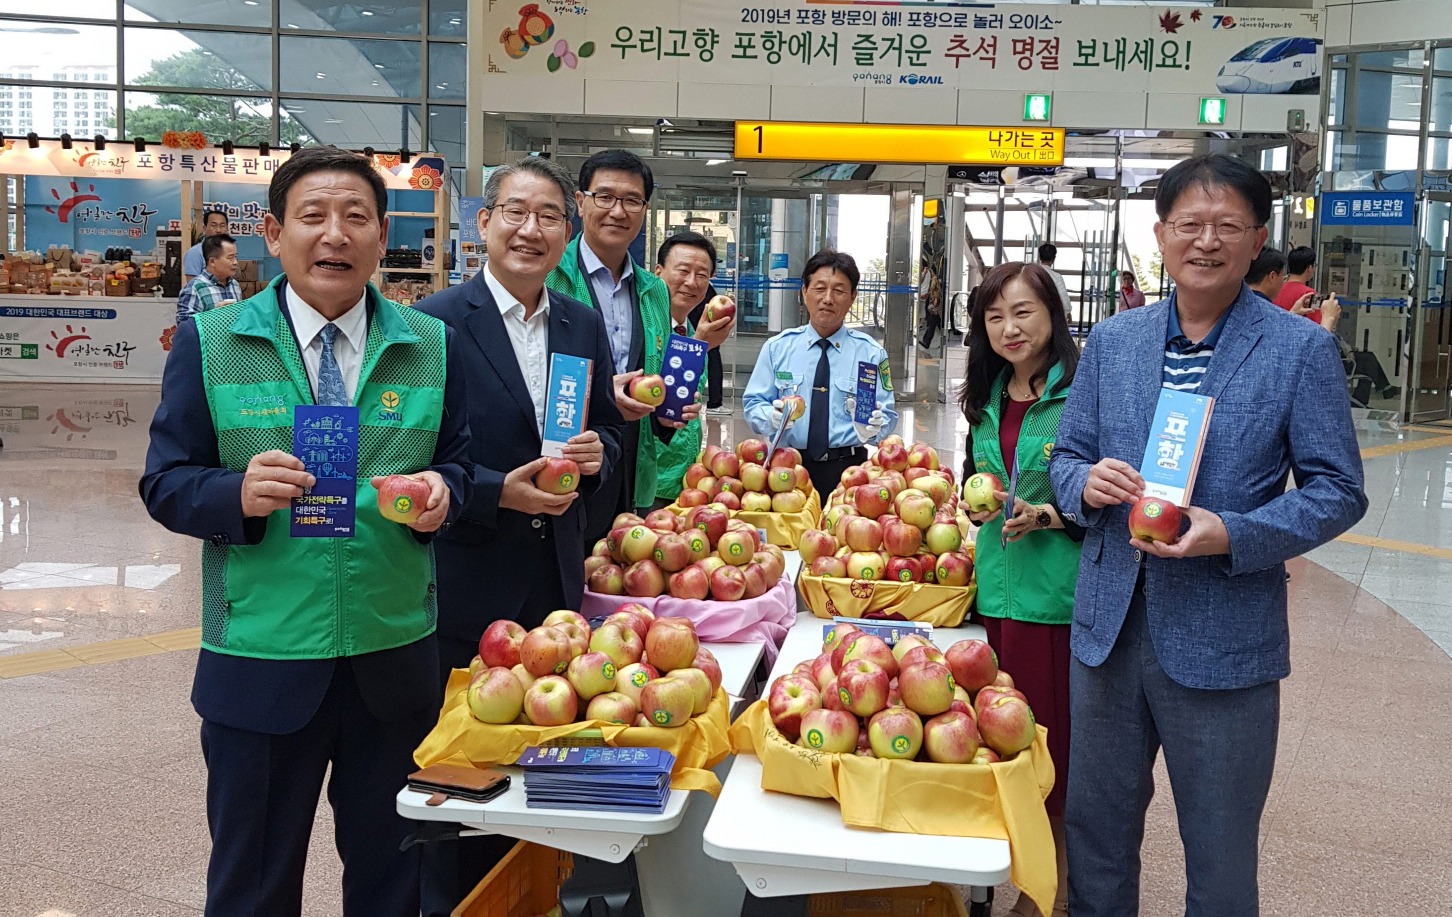 최현욱 포항시새마을회 회장을 비롯한 새마을회 지도자들이 귀성객들에게 나눠 줄 사과를 들고 있다.